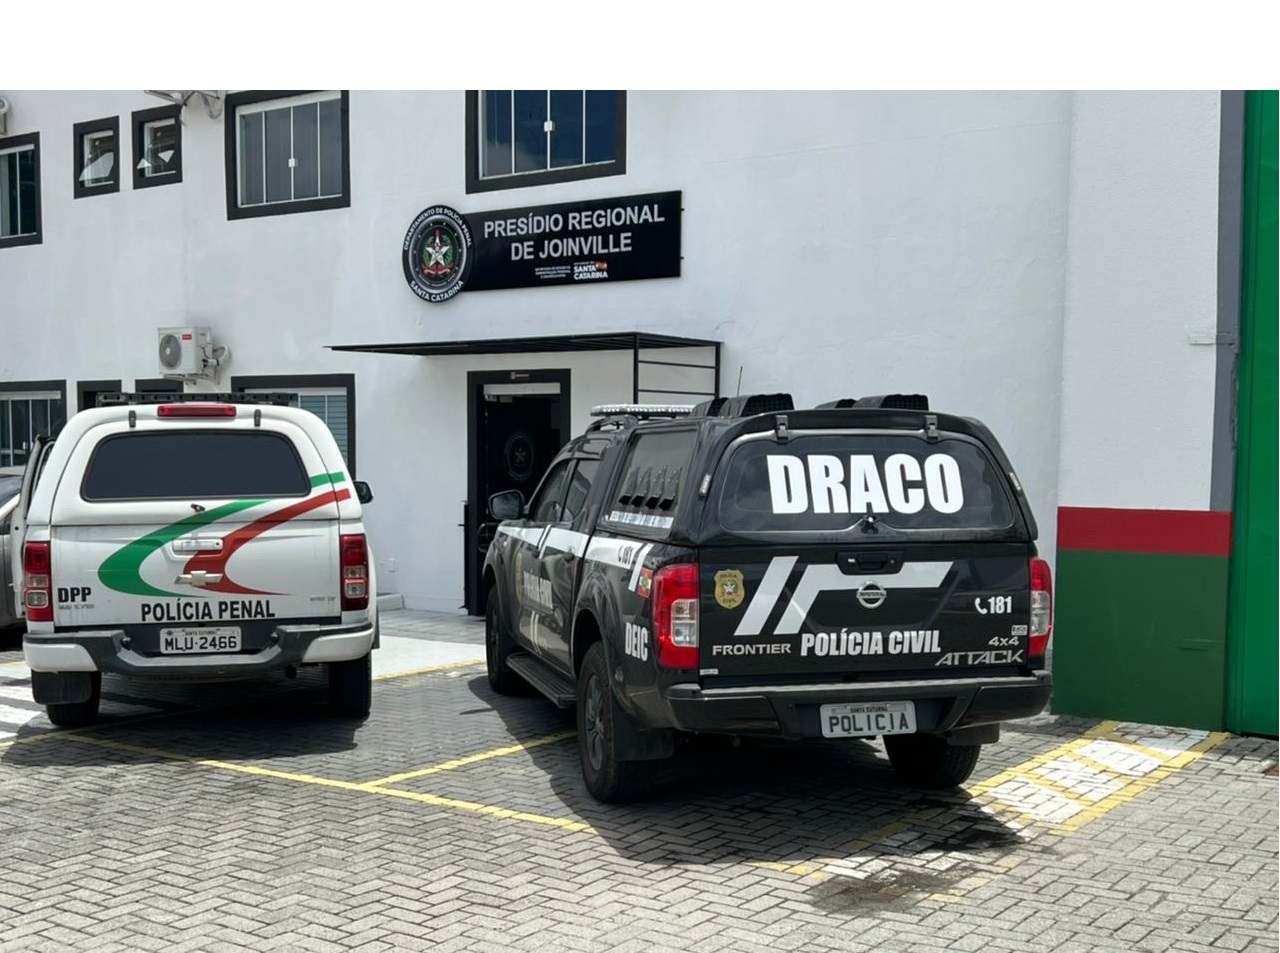 viatura policia civil no lado direito e viatura da policia penal no lado esquerdo, ambos em frente do prédio do presidio regional de Joinville